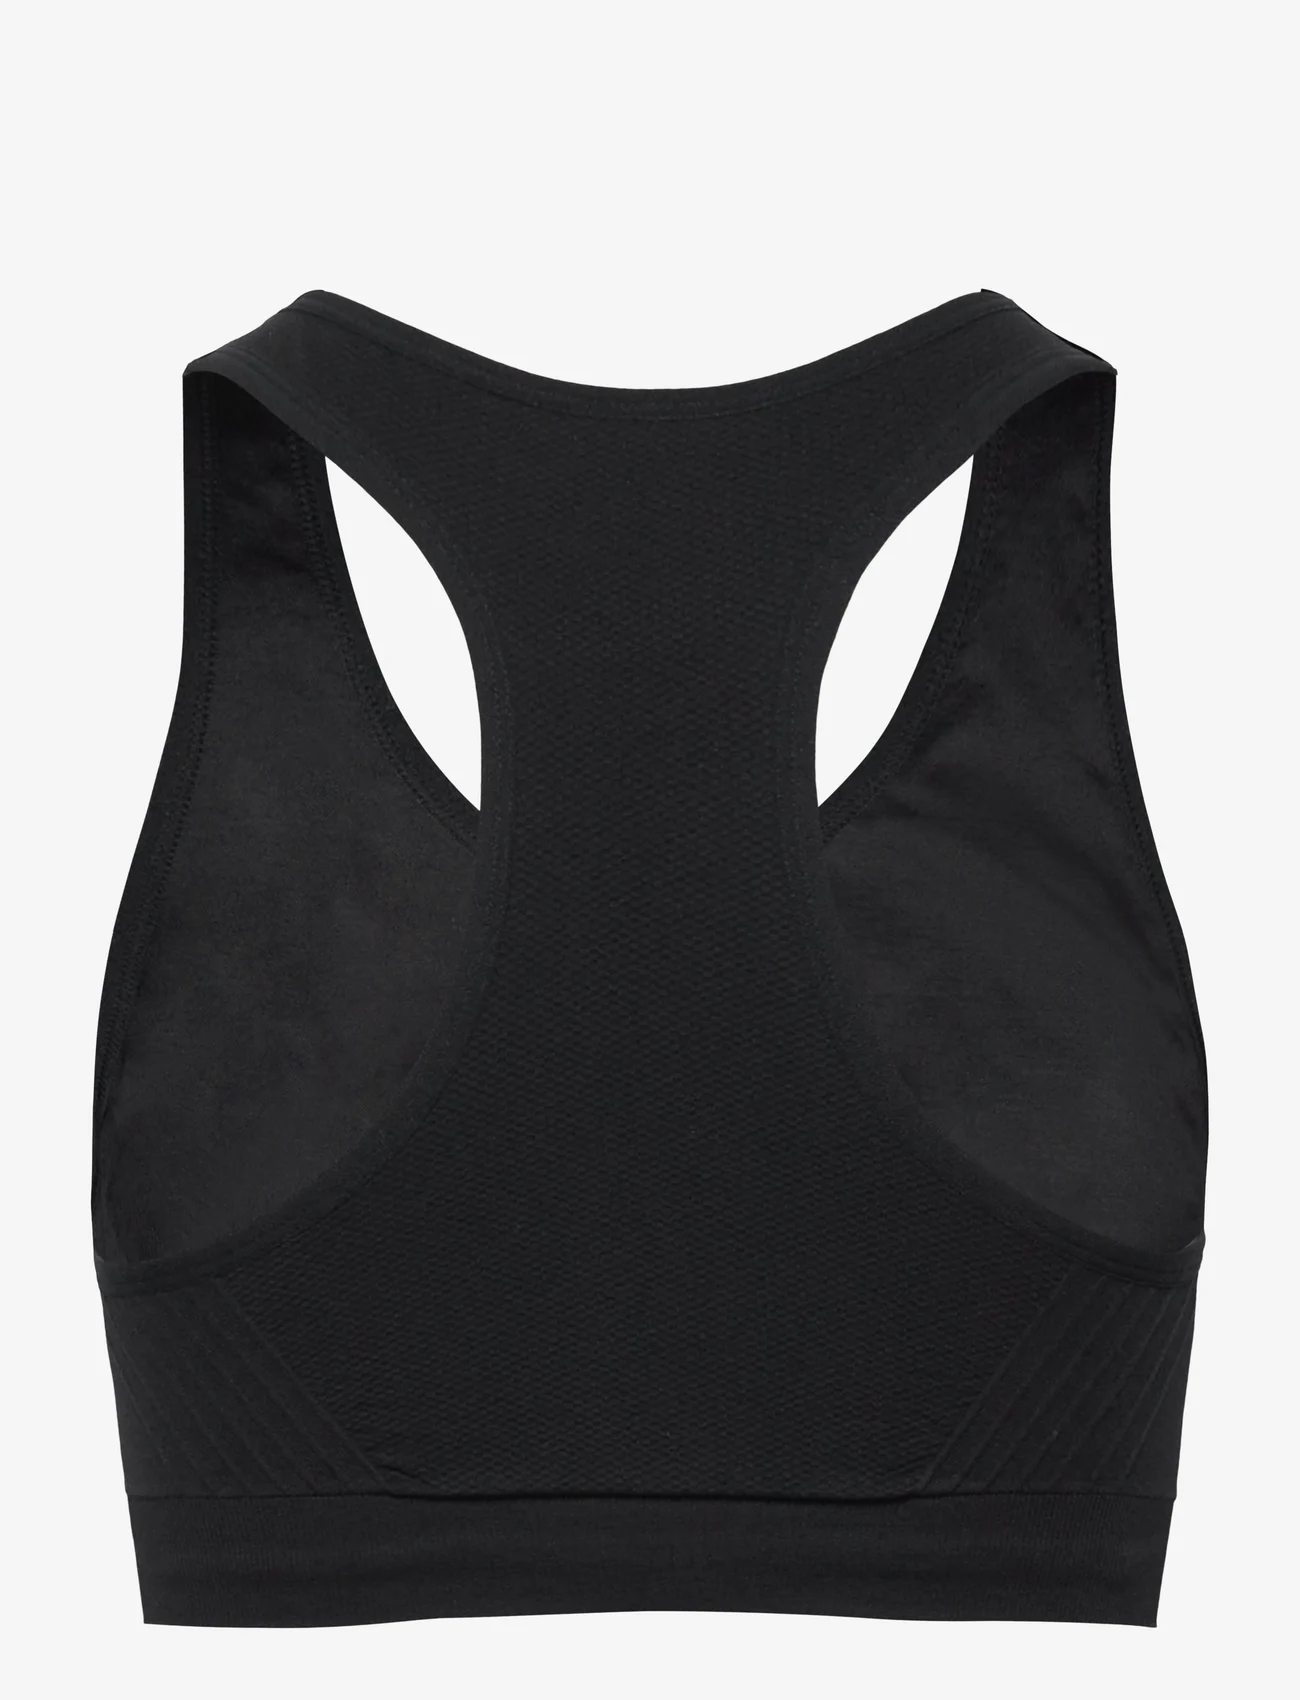 ZEBDIA - Seamless Bra - sport bras: low - black - 1